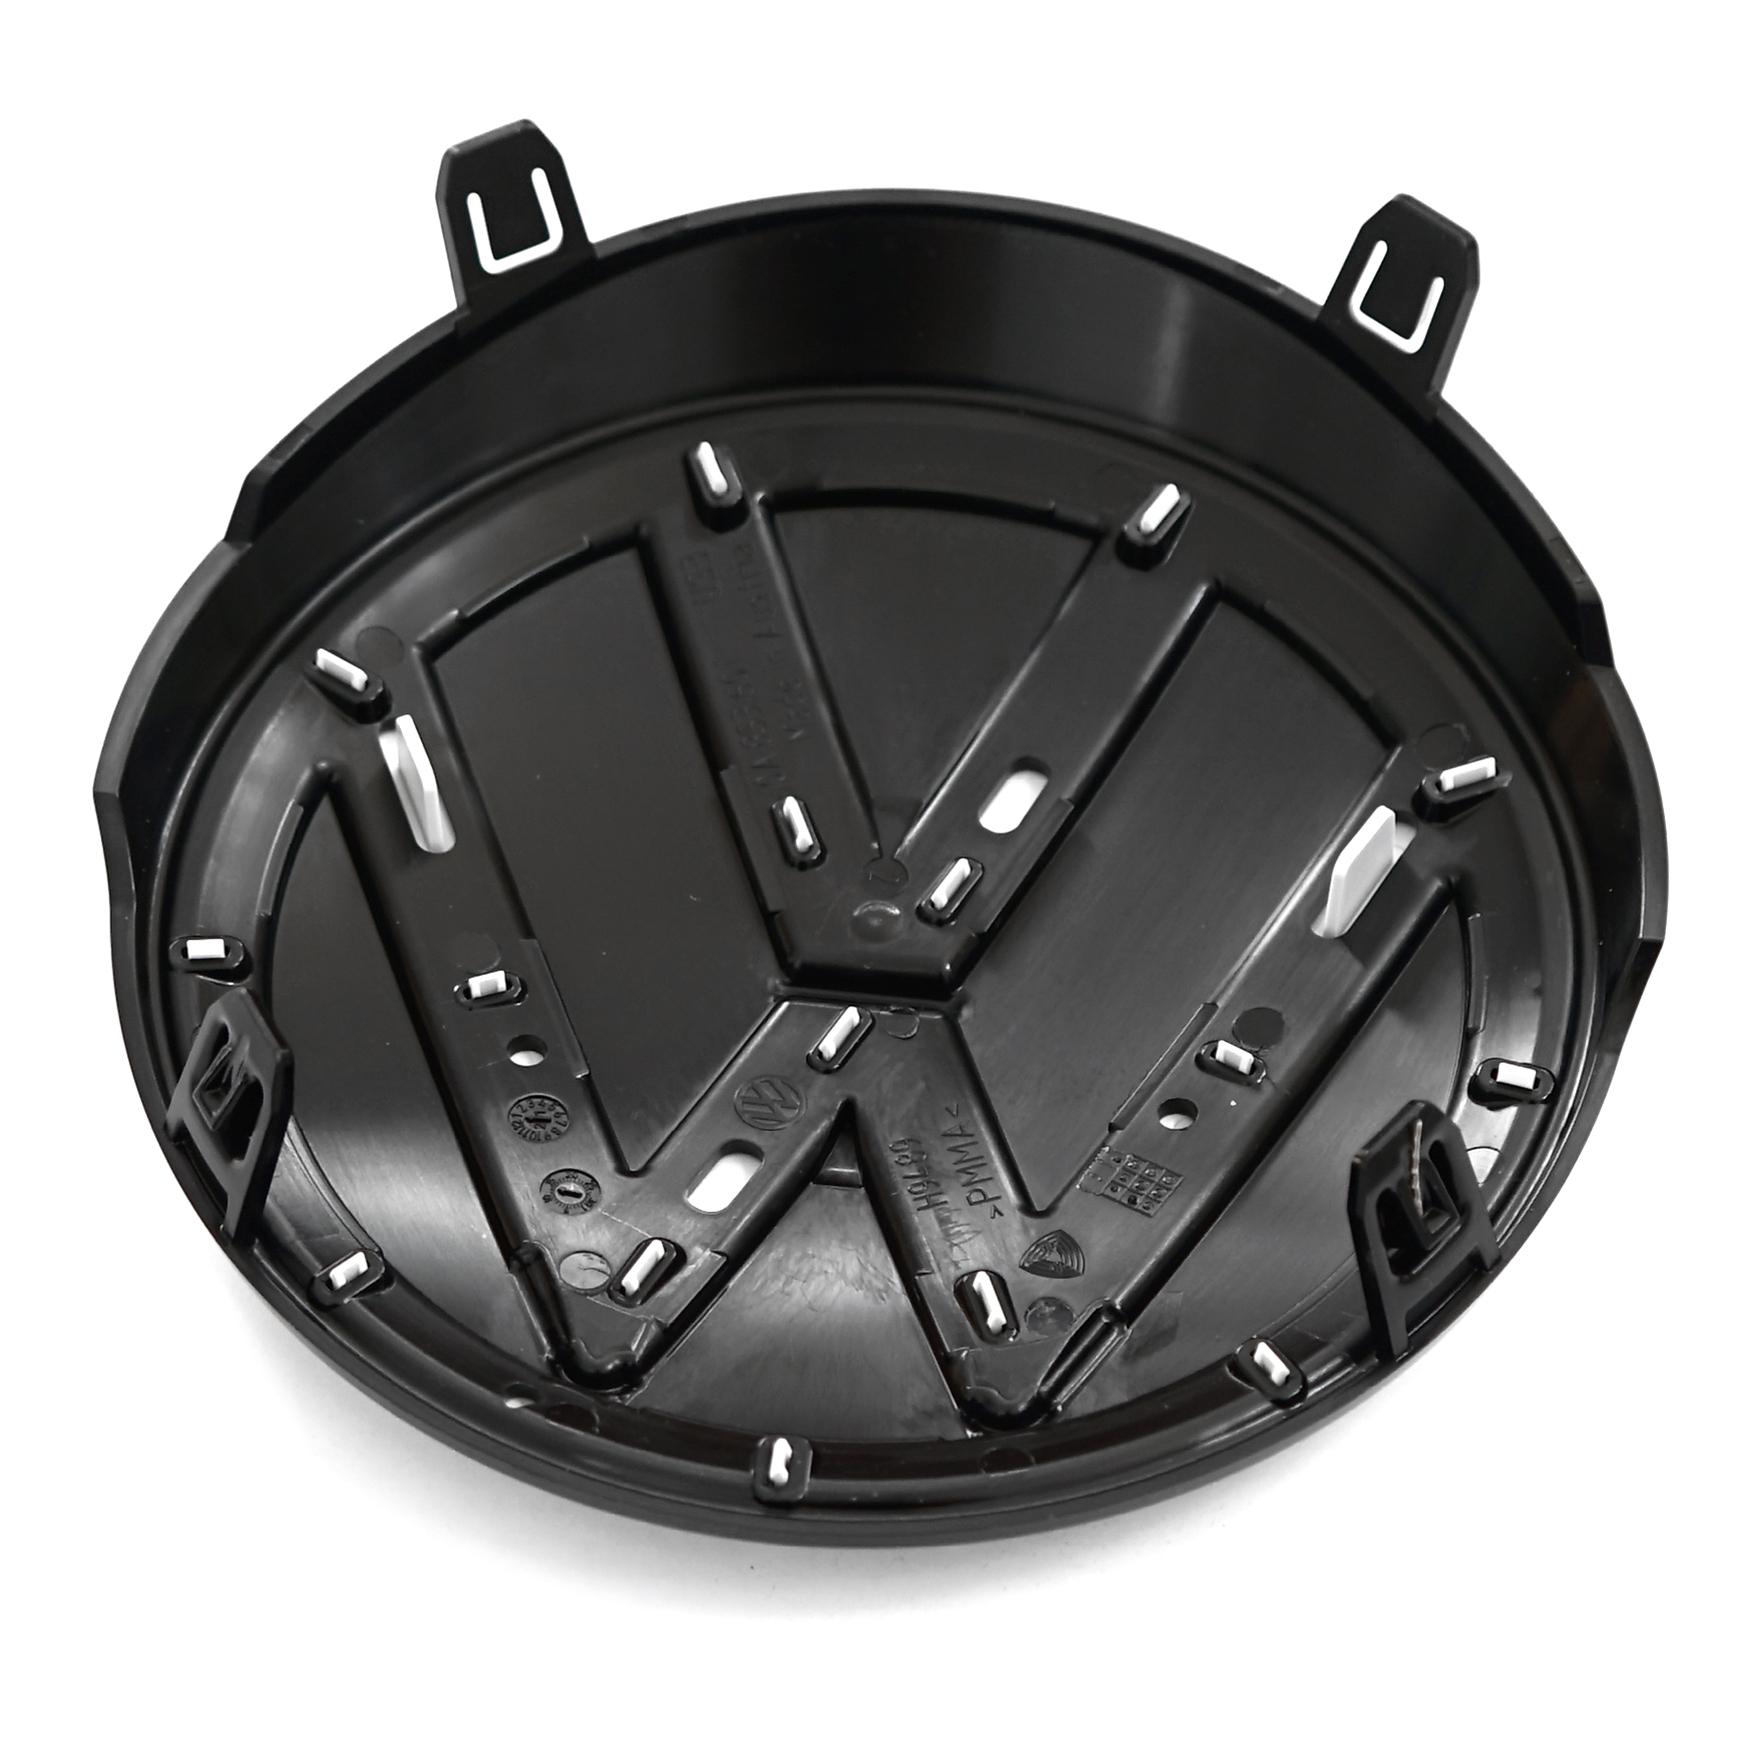 Emblema griglia anteriore logo Volkswagen originale ID.3 bianco/nero